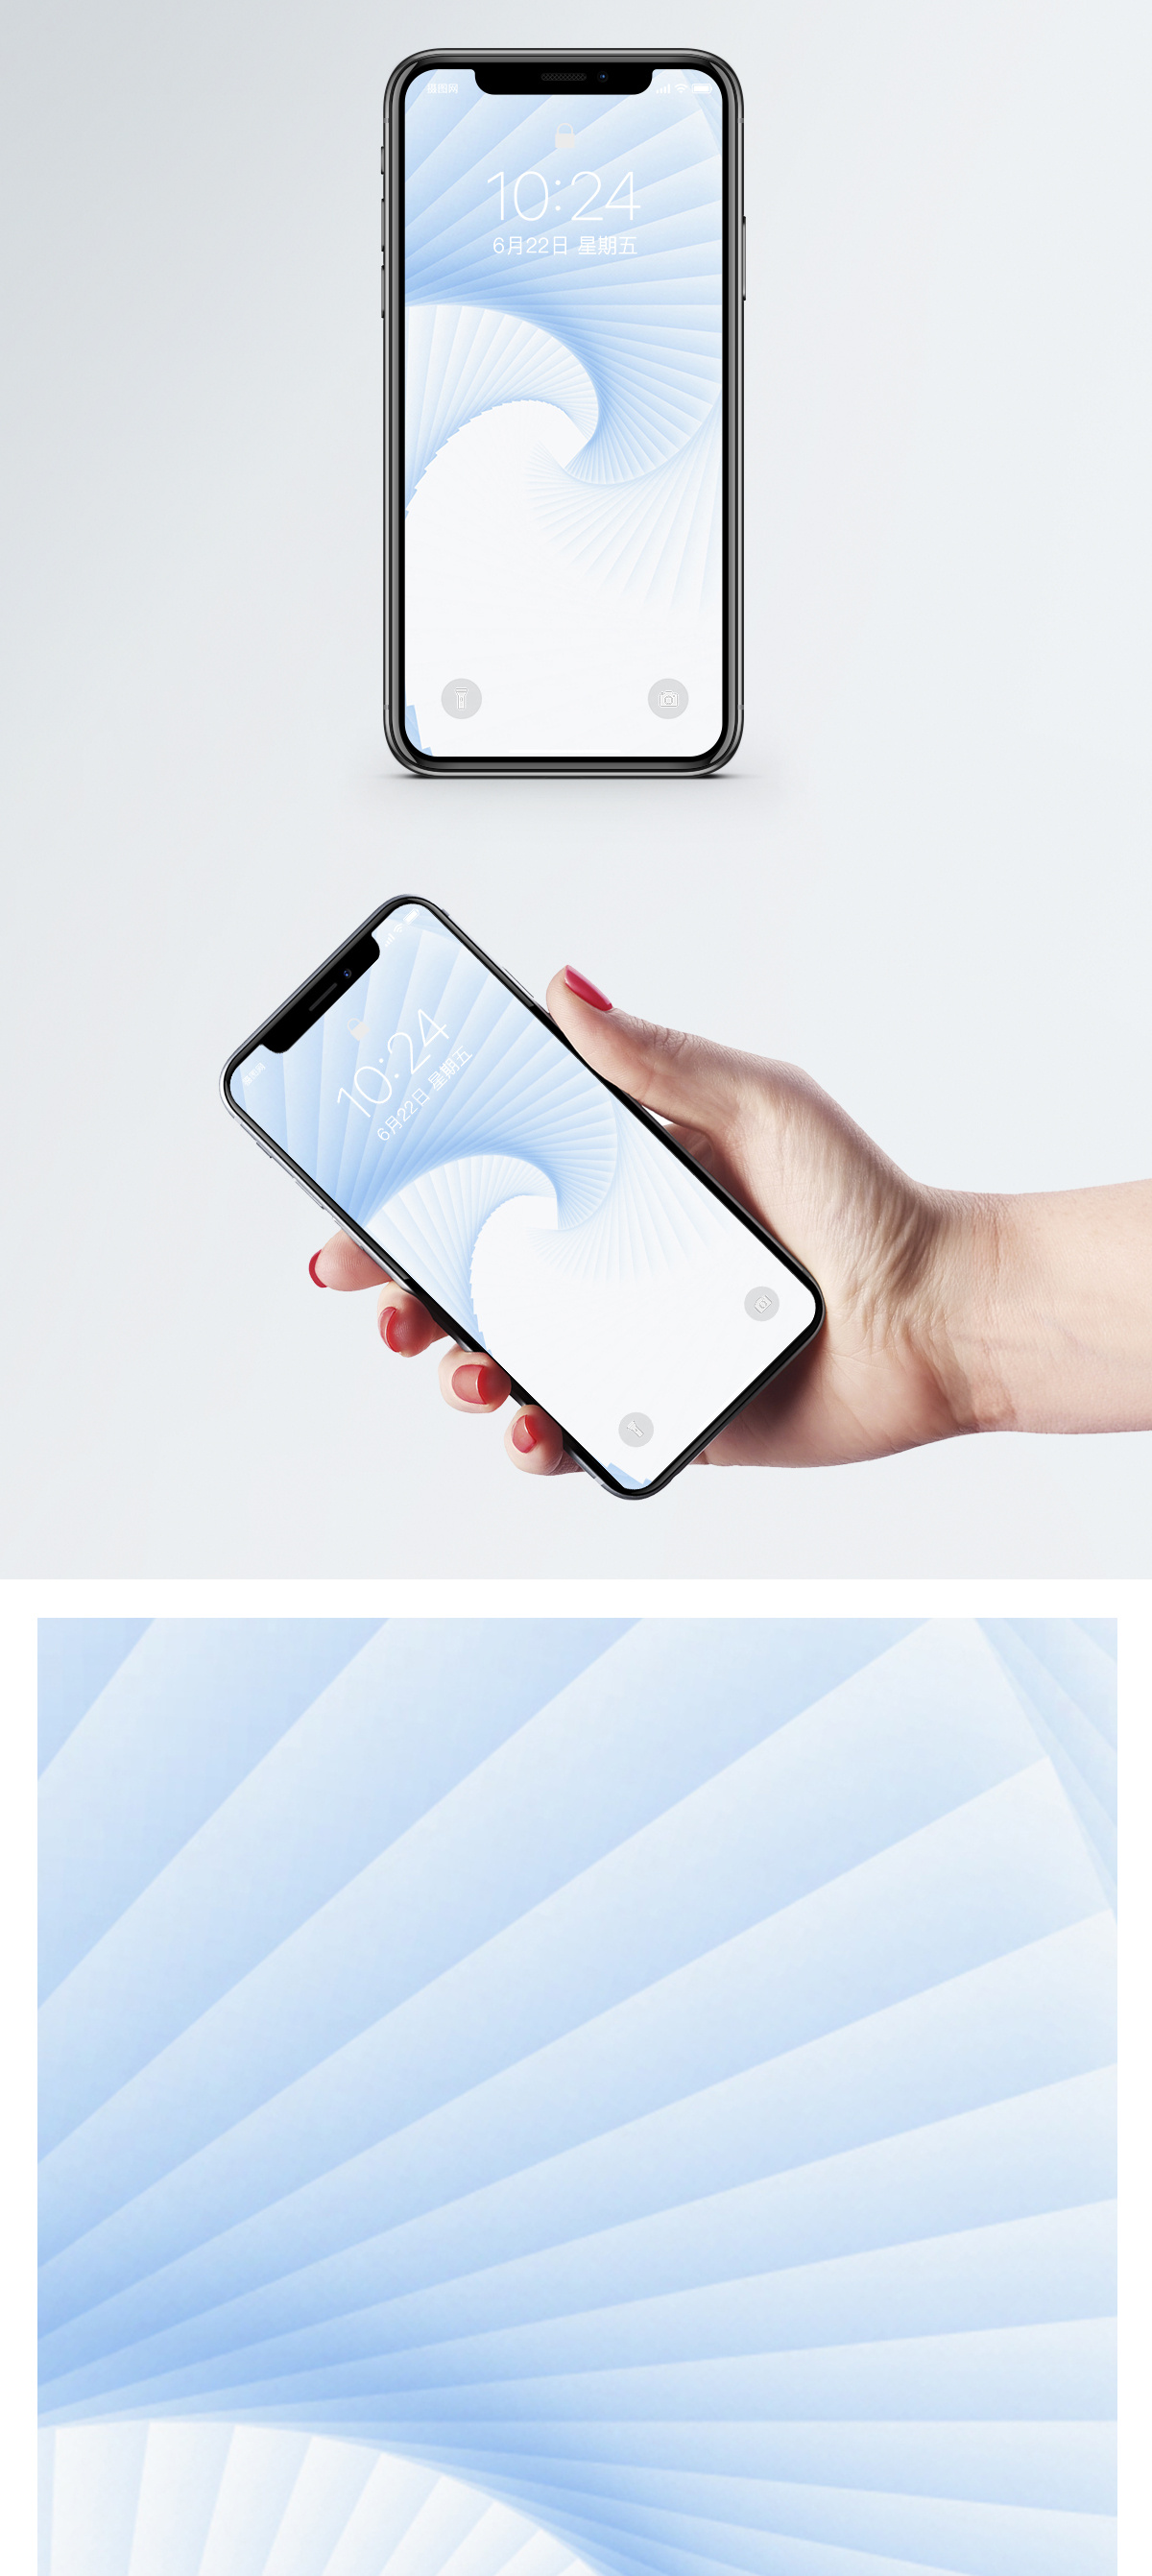 2020苹果手机壁纸新款,手机壁纸图片清新,8d炫酷手机动态壁纸_文秘苑图库